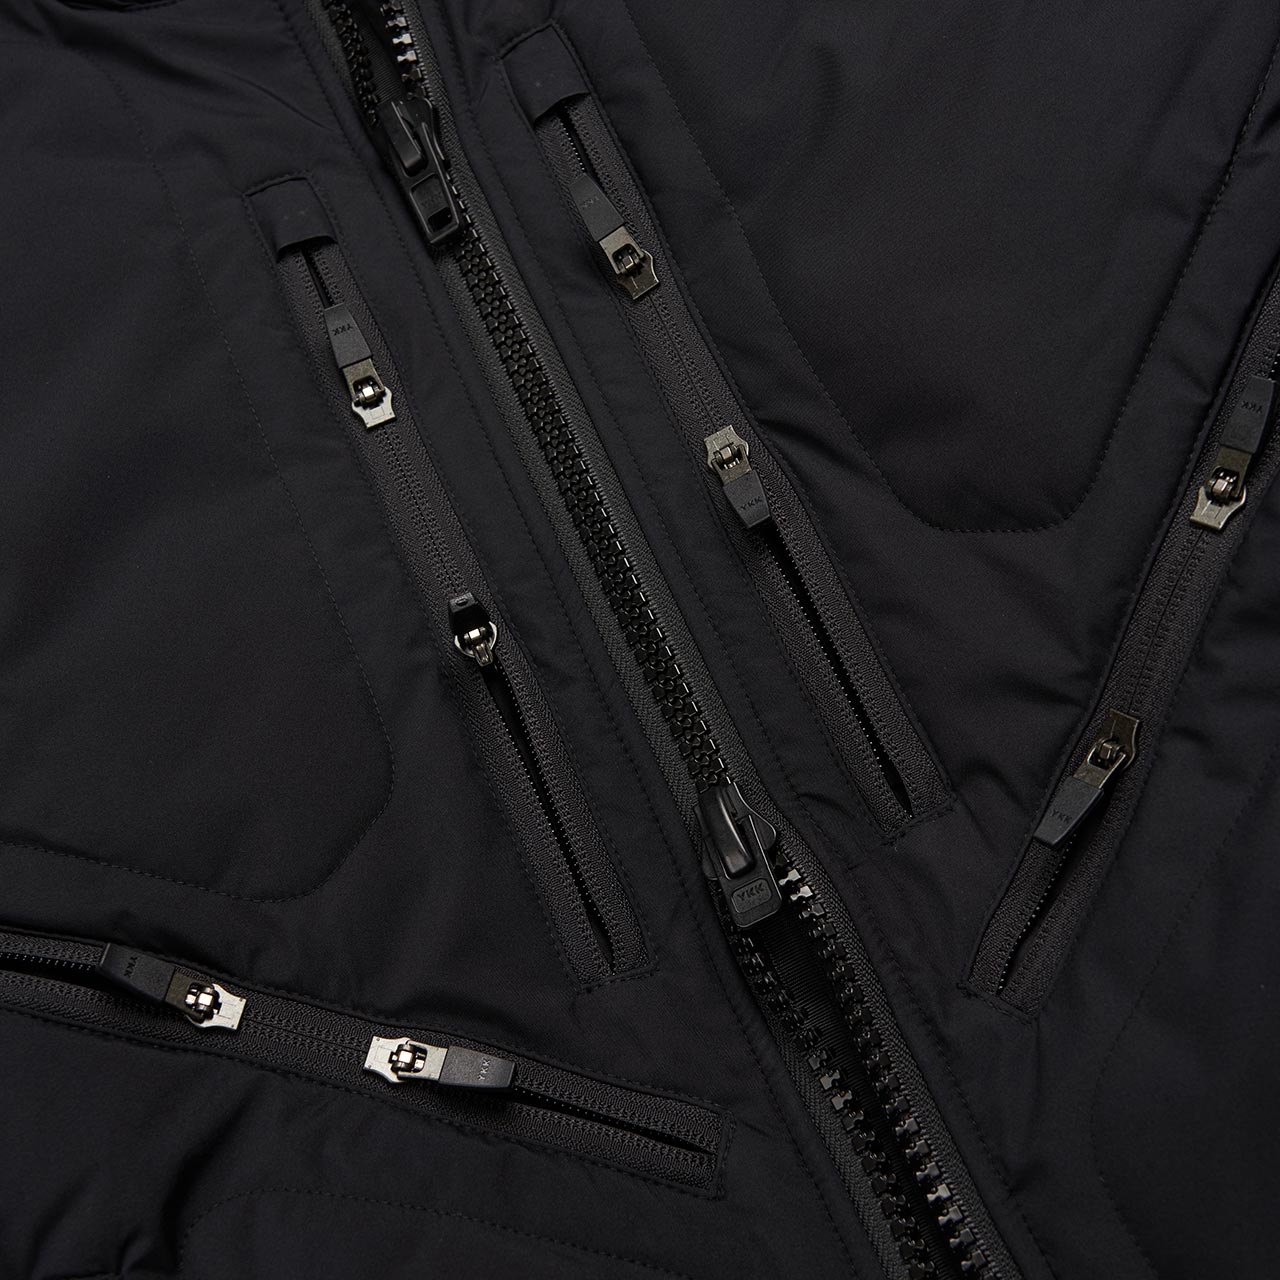 acronym acronym j16-ws gore-tex jacket (black)